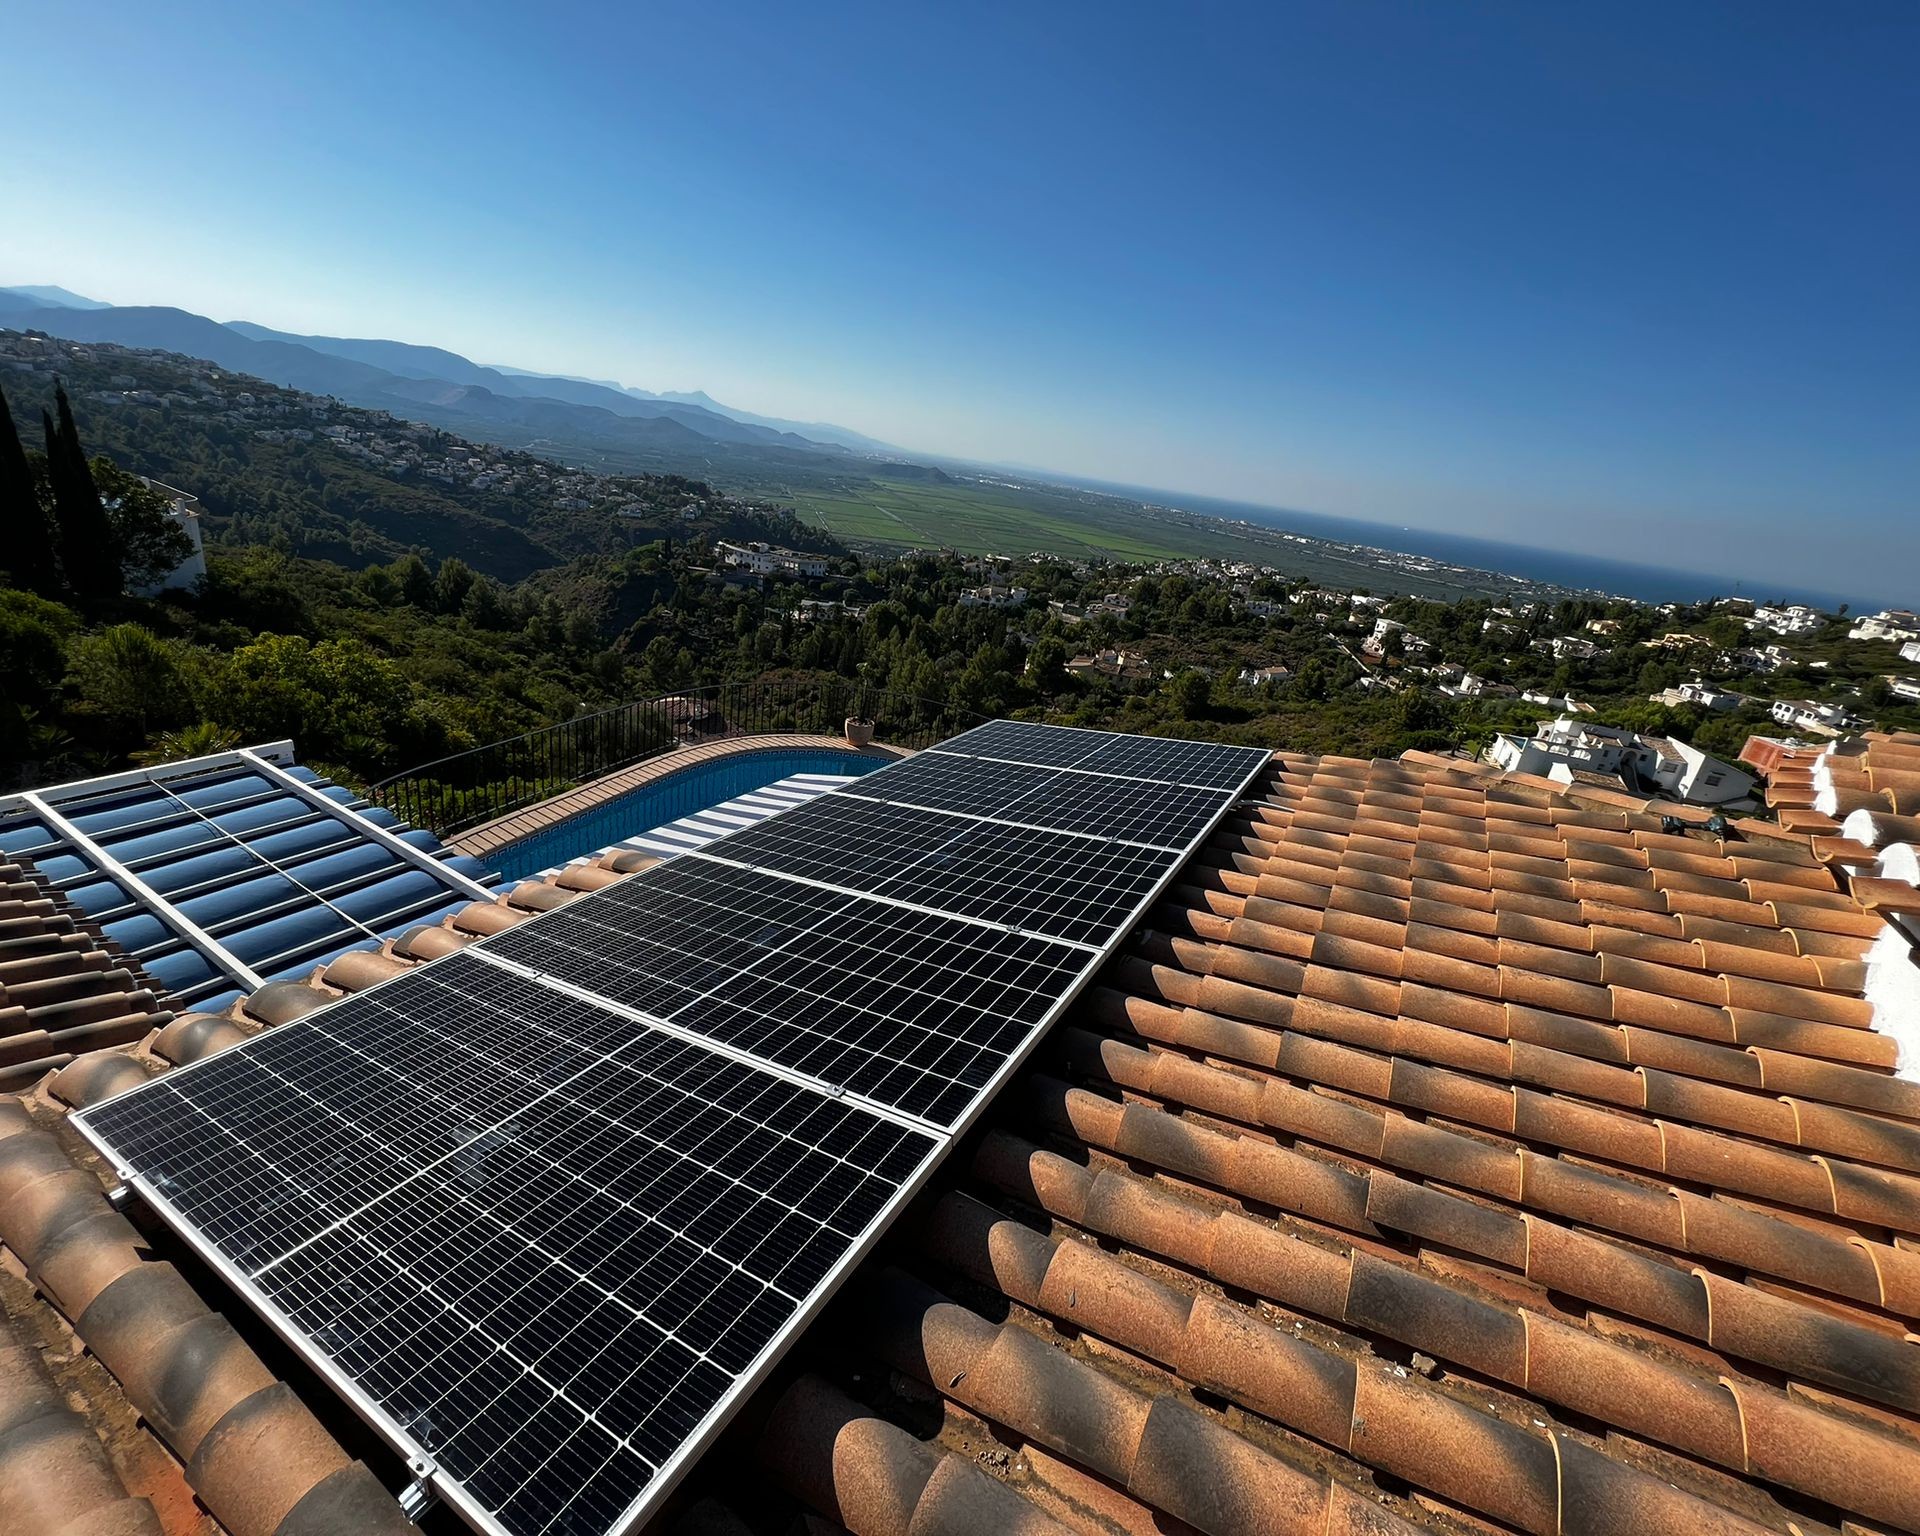 10X 455 wp Solar Panels, El Ràfol d'Almúnia, Alicante (Hybrid system)